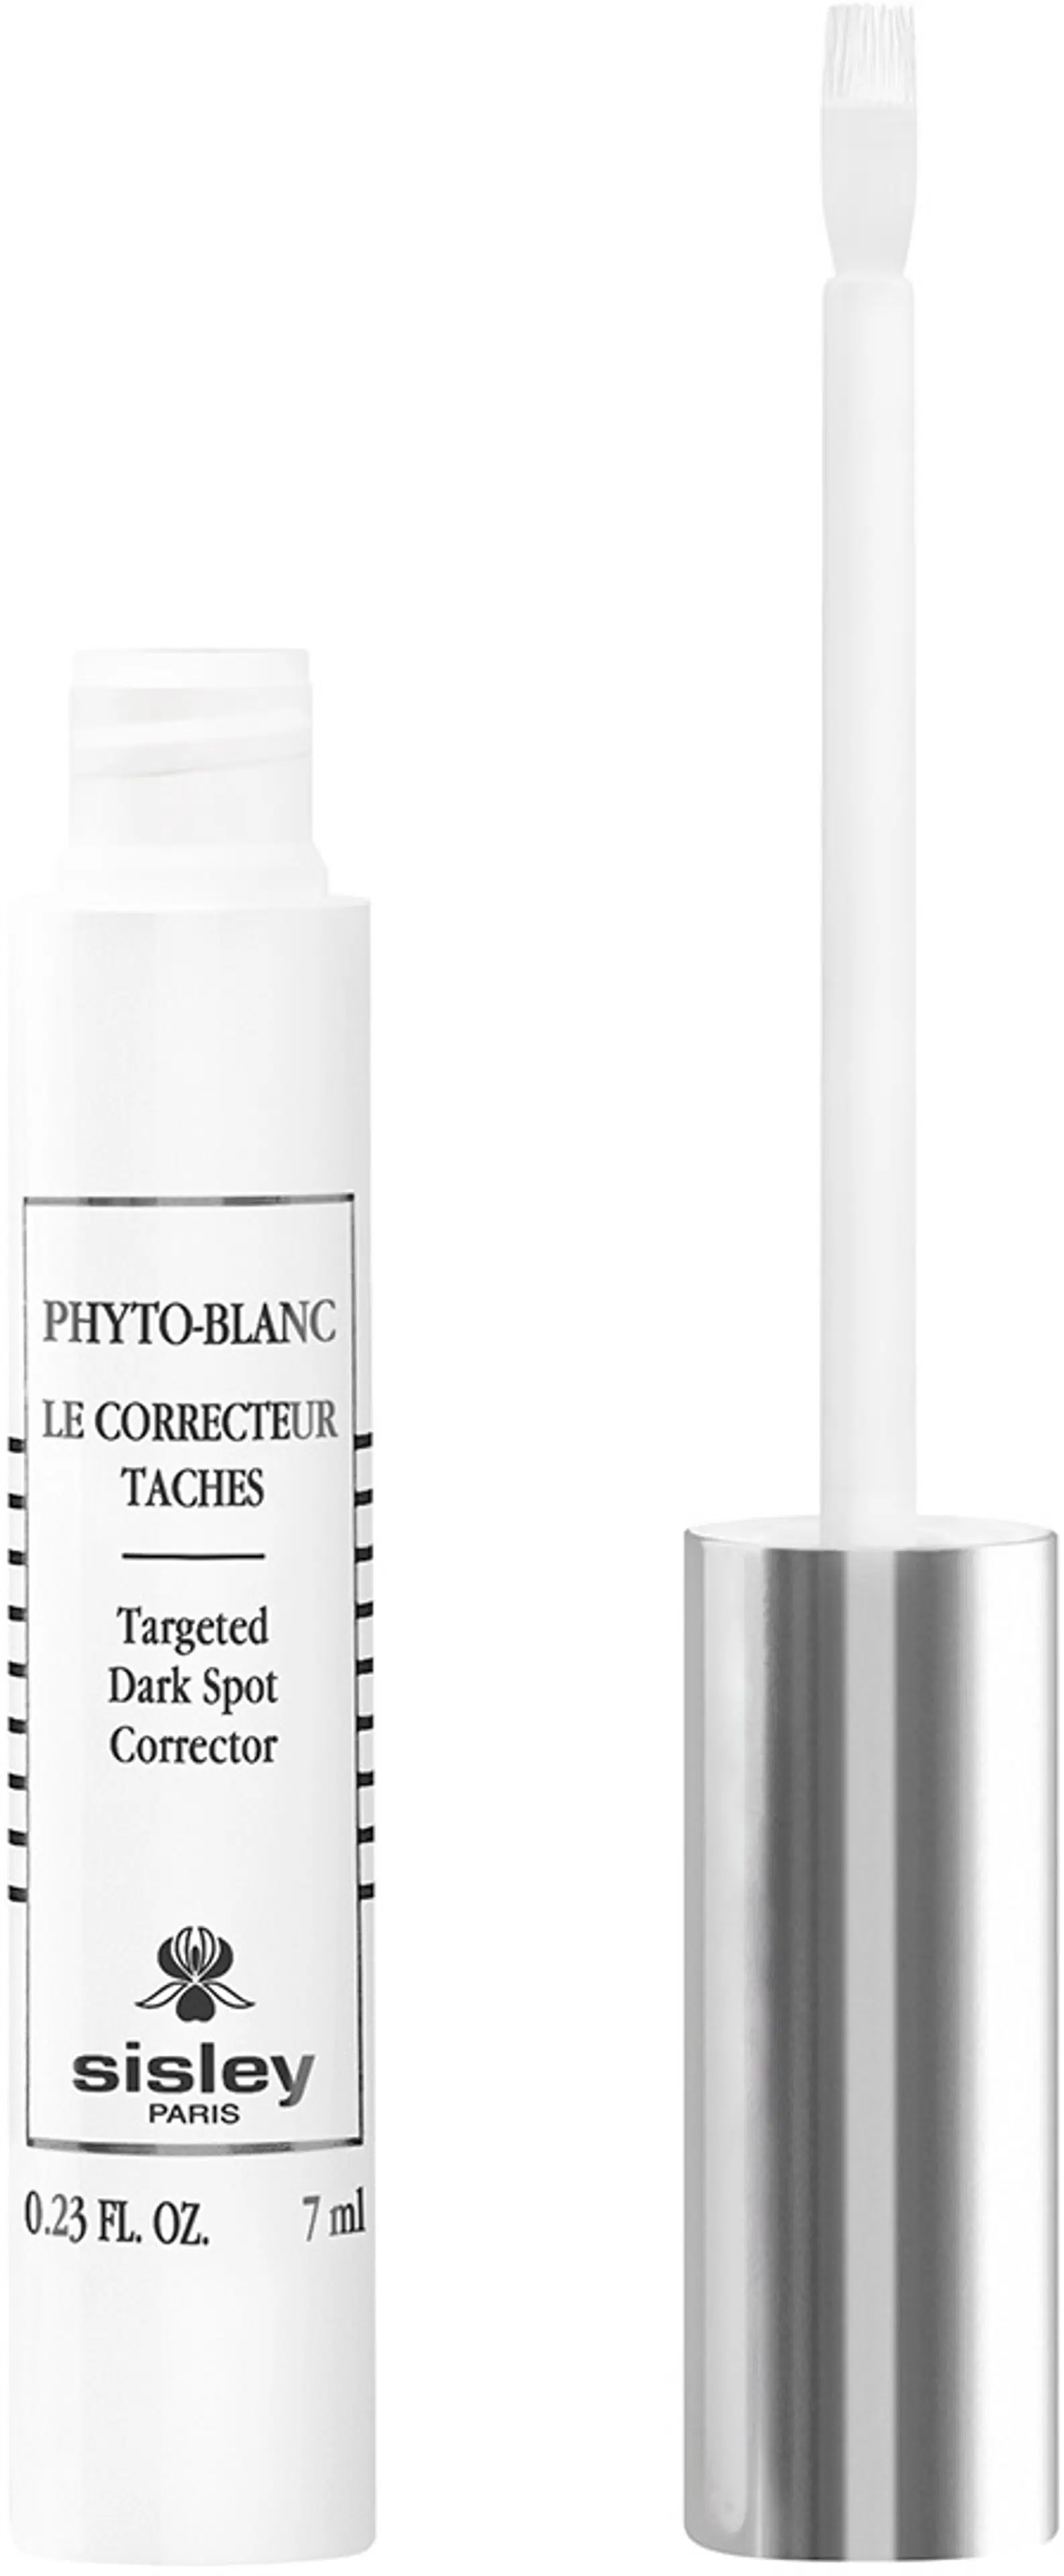 Sisley Phyto-Blanc Targeted Dark Spot Corrector paikallishoitoseerumi 7 ml